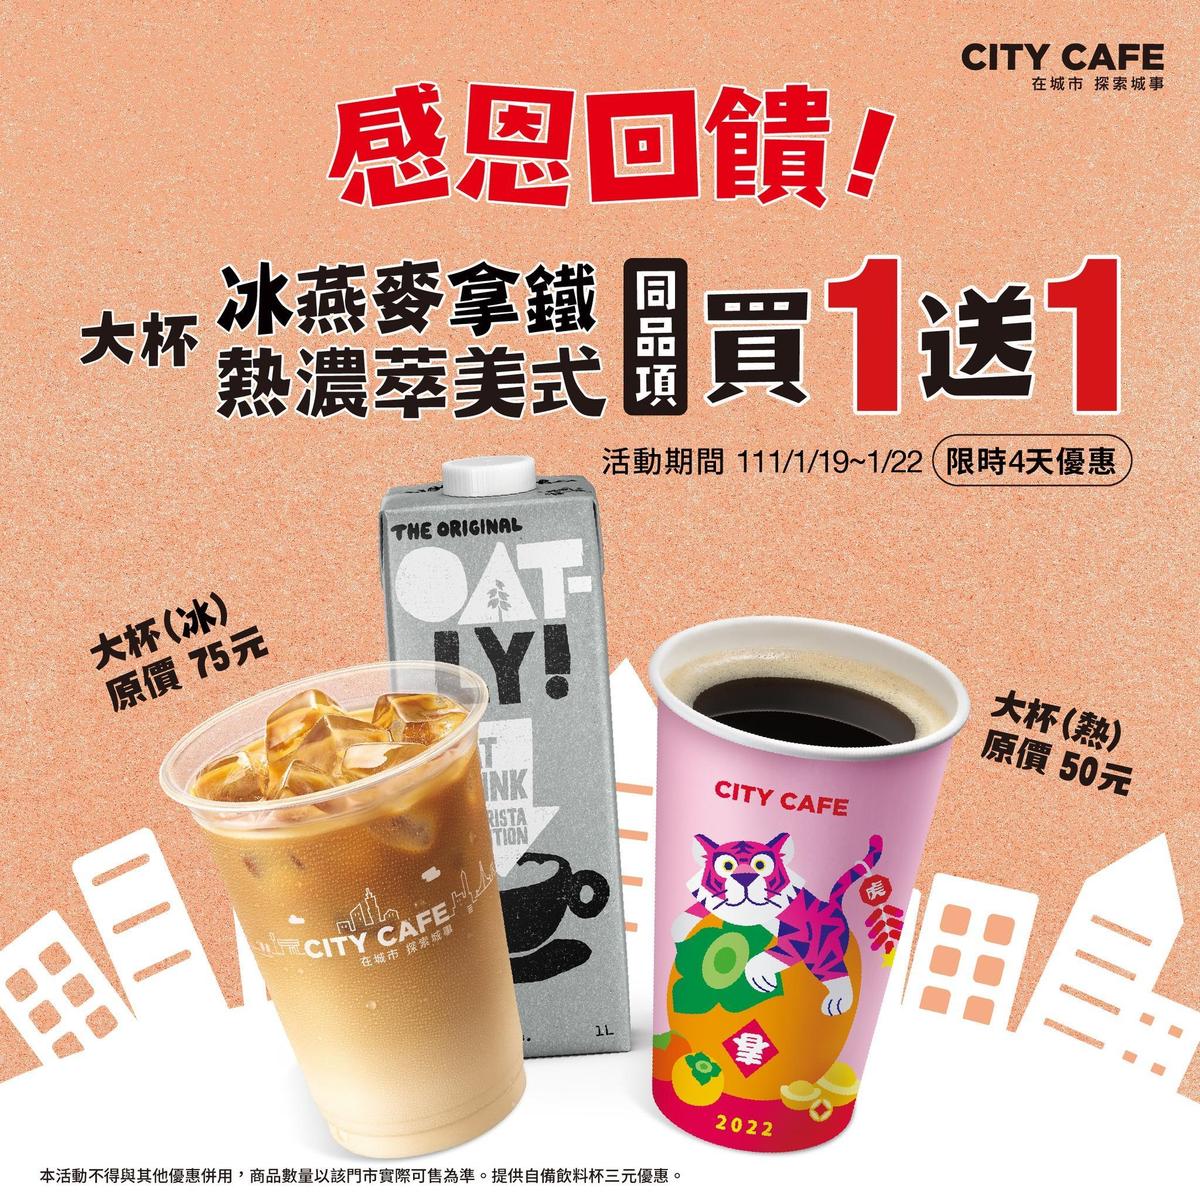 1月19日至1月22日限時4天，CITY CAFE大杯冰燕拿鐵、熱濃萃美式咖啡，同品項買一送一。（翻攝自7-ELEVEN臉書）